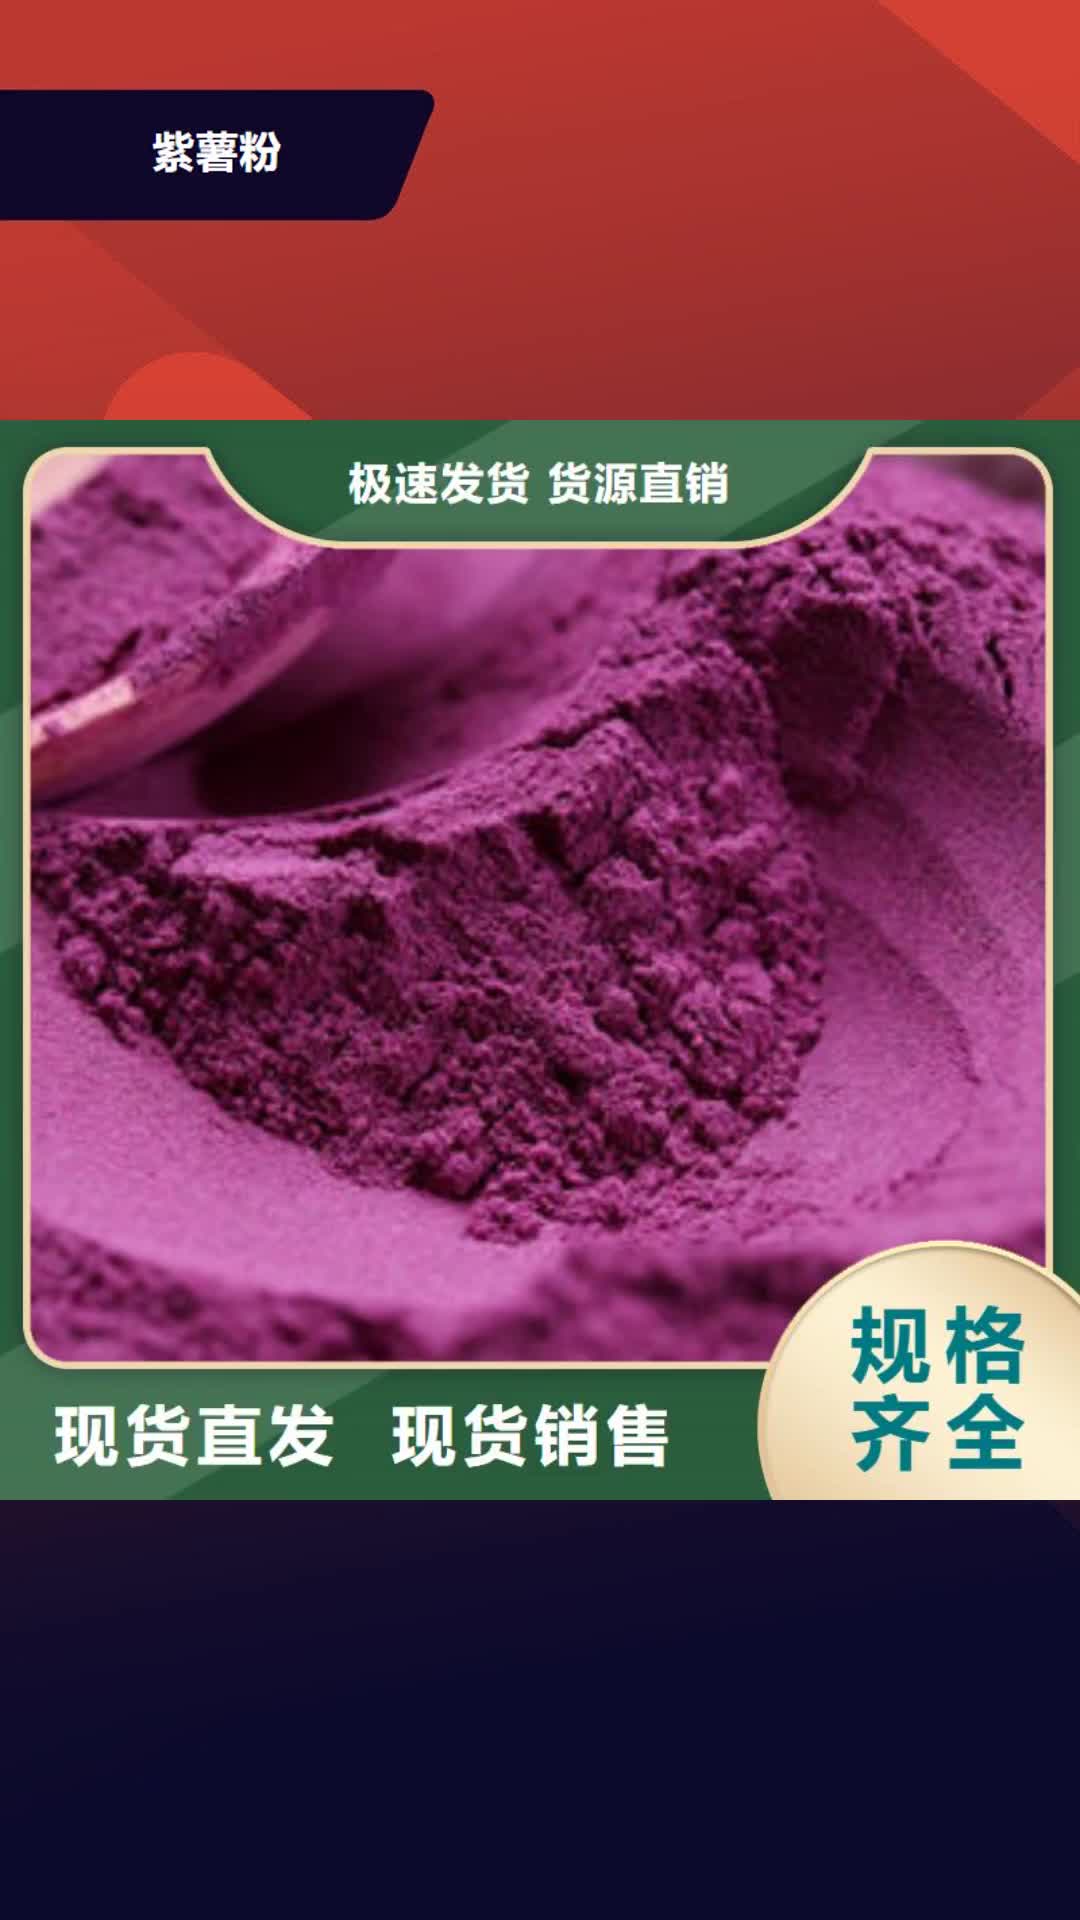 湖州【紫薯粉】,南瓜丁产品优良